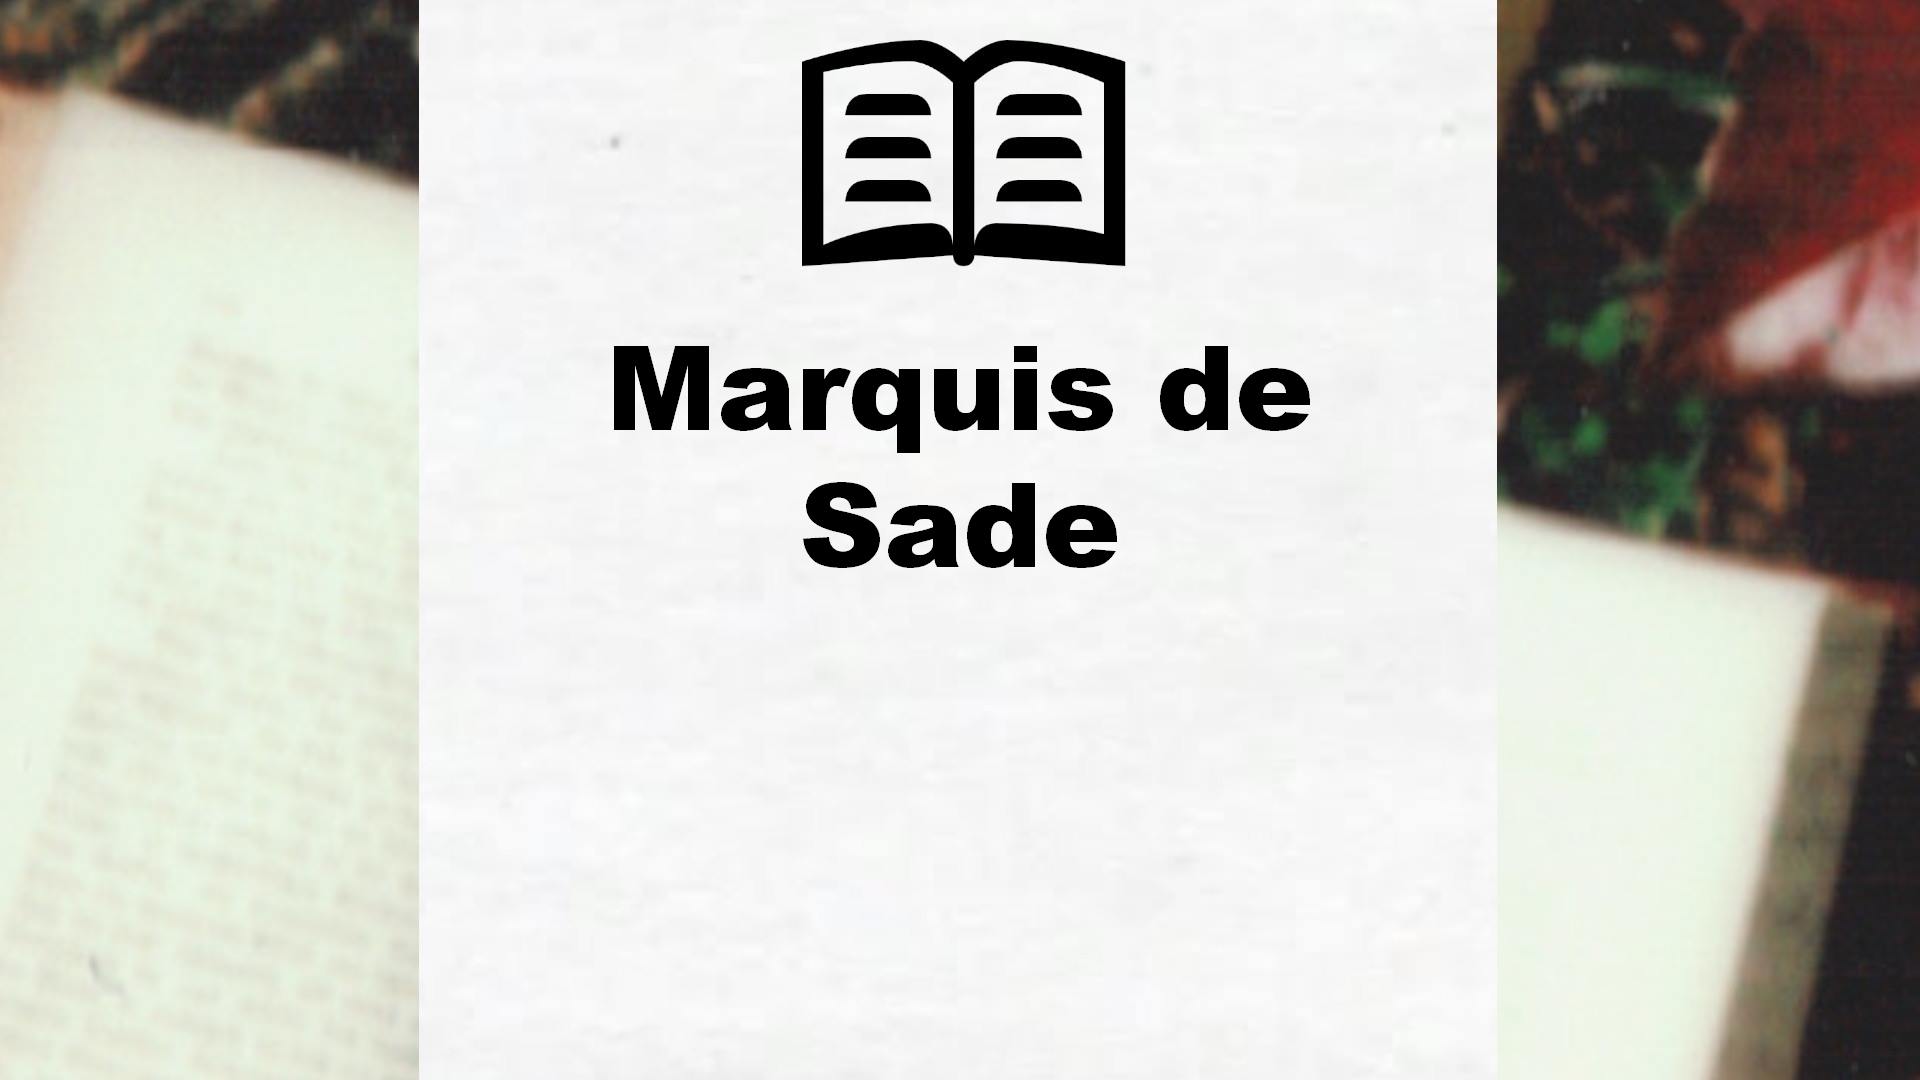 Livres de Marquis de Sade